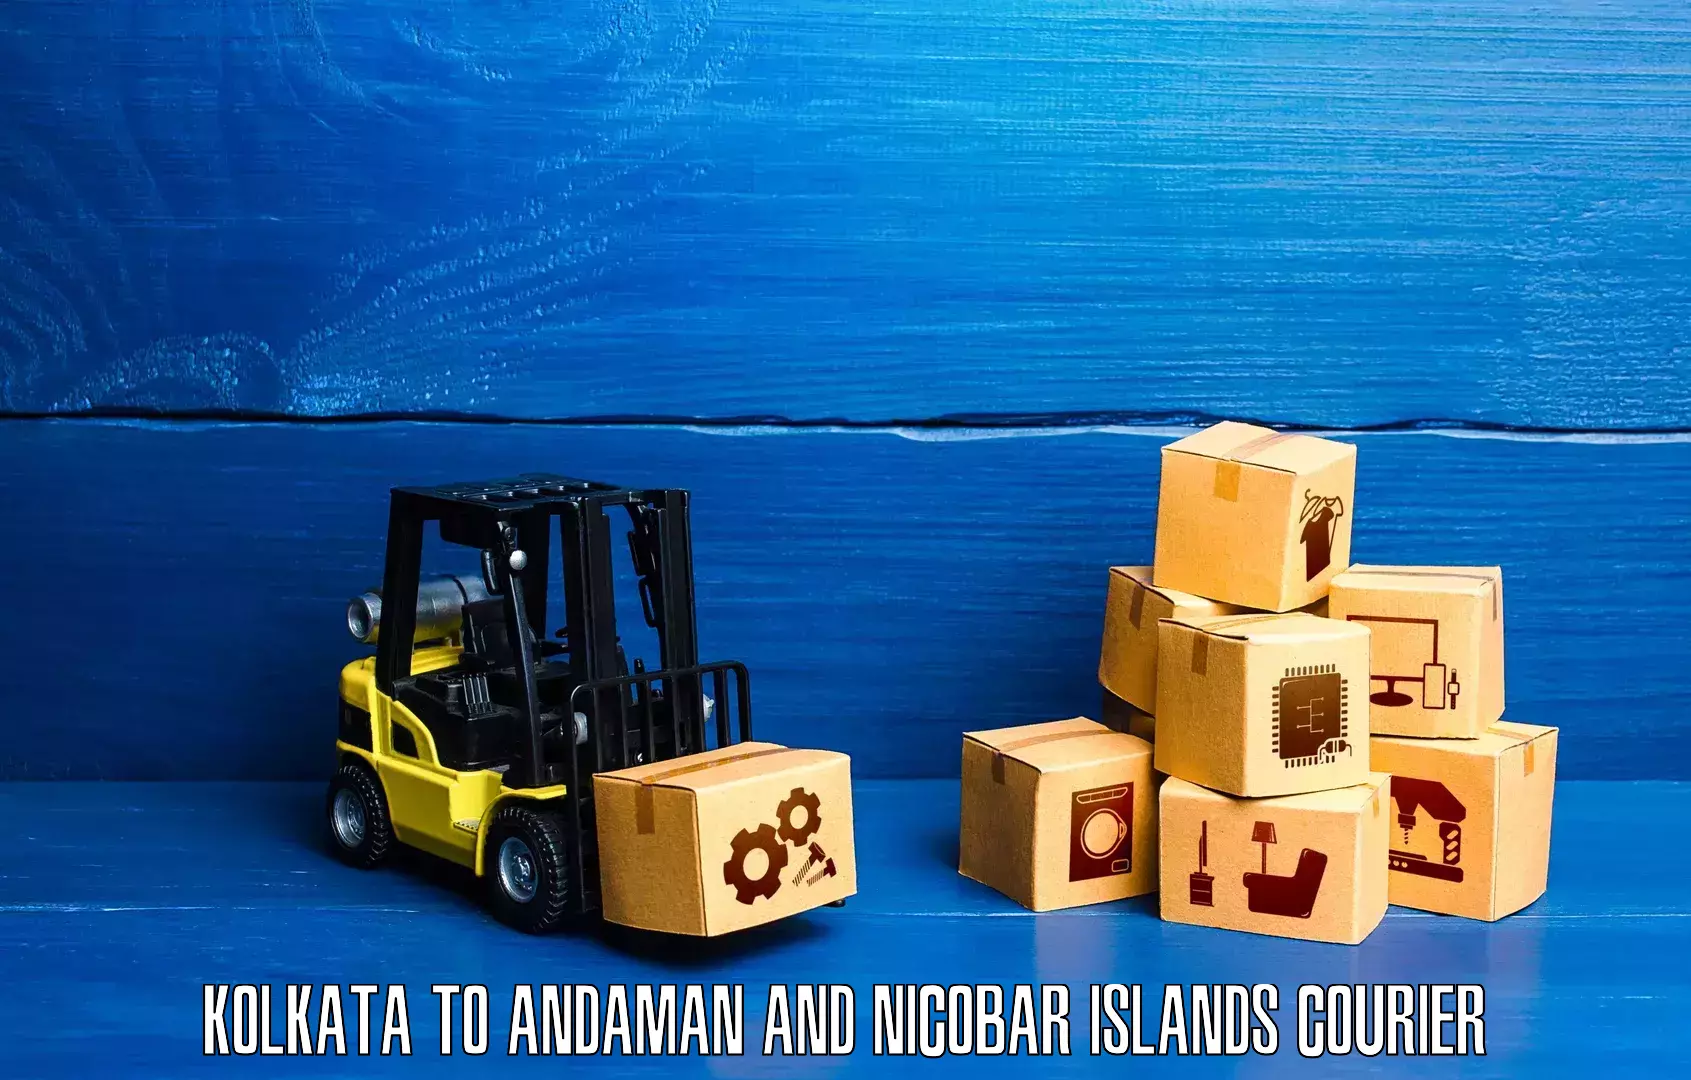 Advanced shipping network Kolkata to Andaman and Nicobar Islands